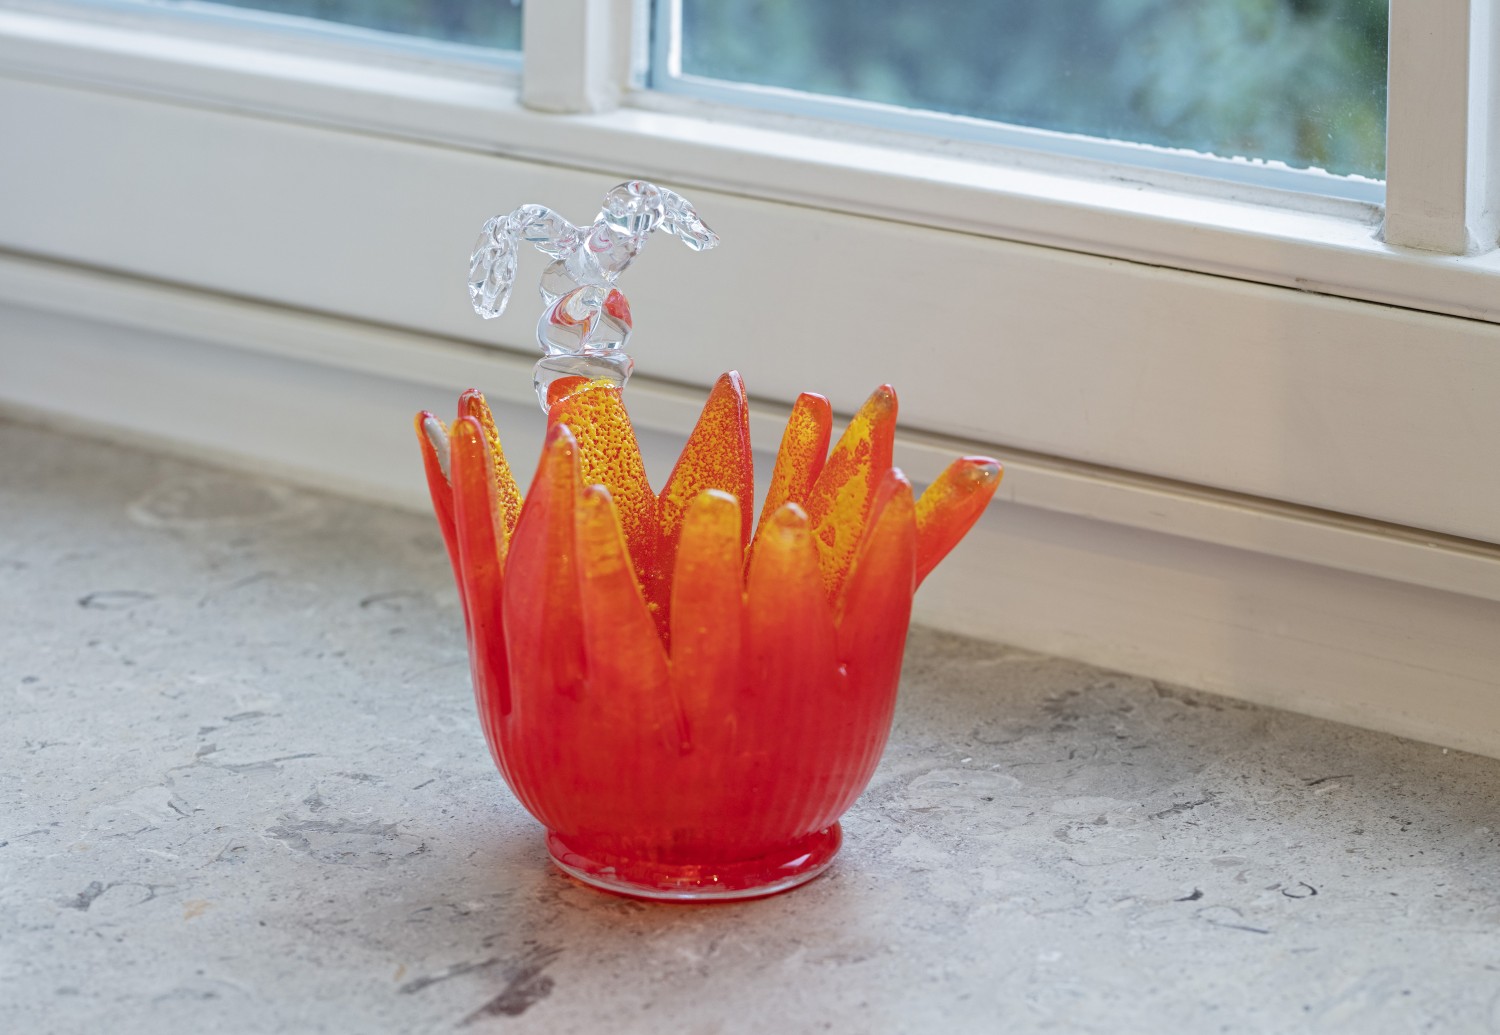 Objekt der aus Glas gefertigten dreiteiligen Objektserie "Fleurs" von Julie Béna. Das Glasobjekt stellt einen roten Blütenkopf dar, auf dem ein Miniaturphallus positioniert ist. Die Arbeit stellt vorherrschende Genderkategorien infrage, indem sie die Konnotationen des Phallussymbols verunsichern.